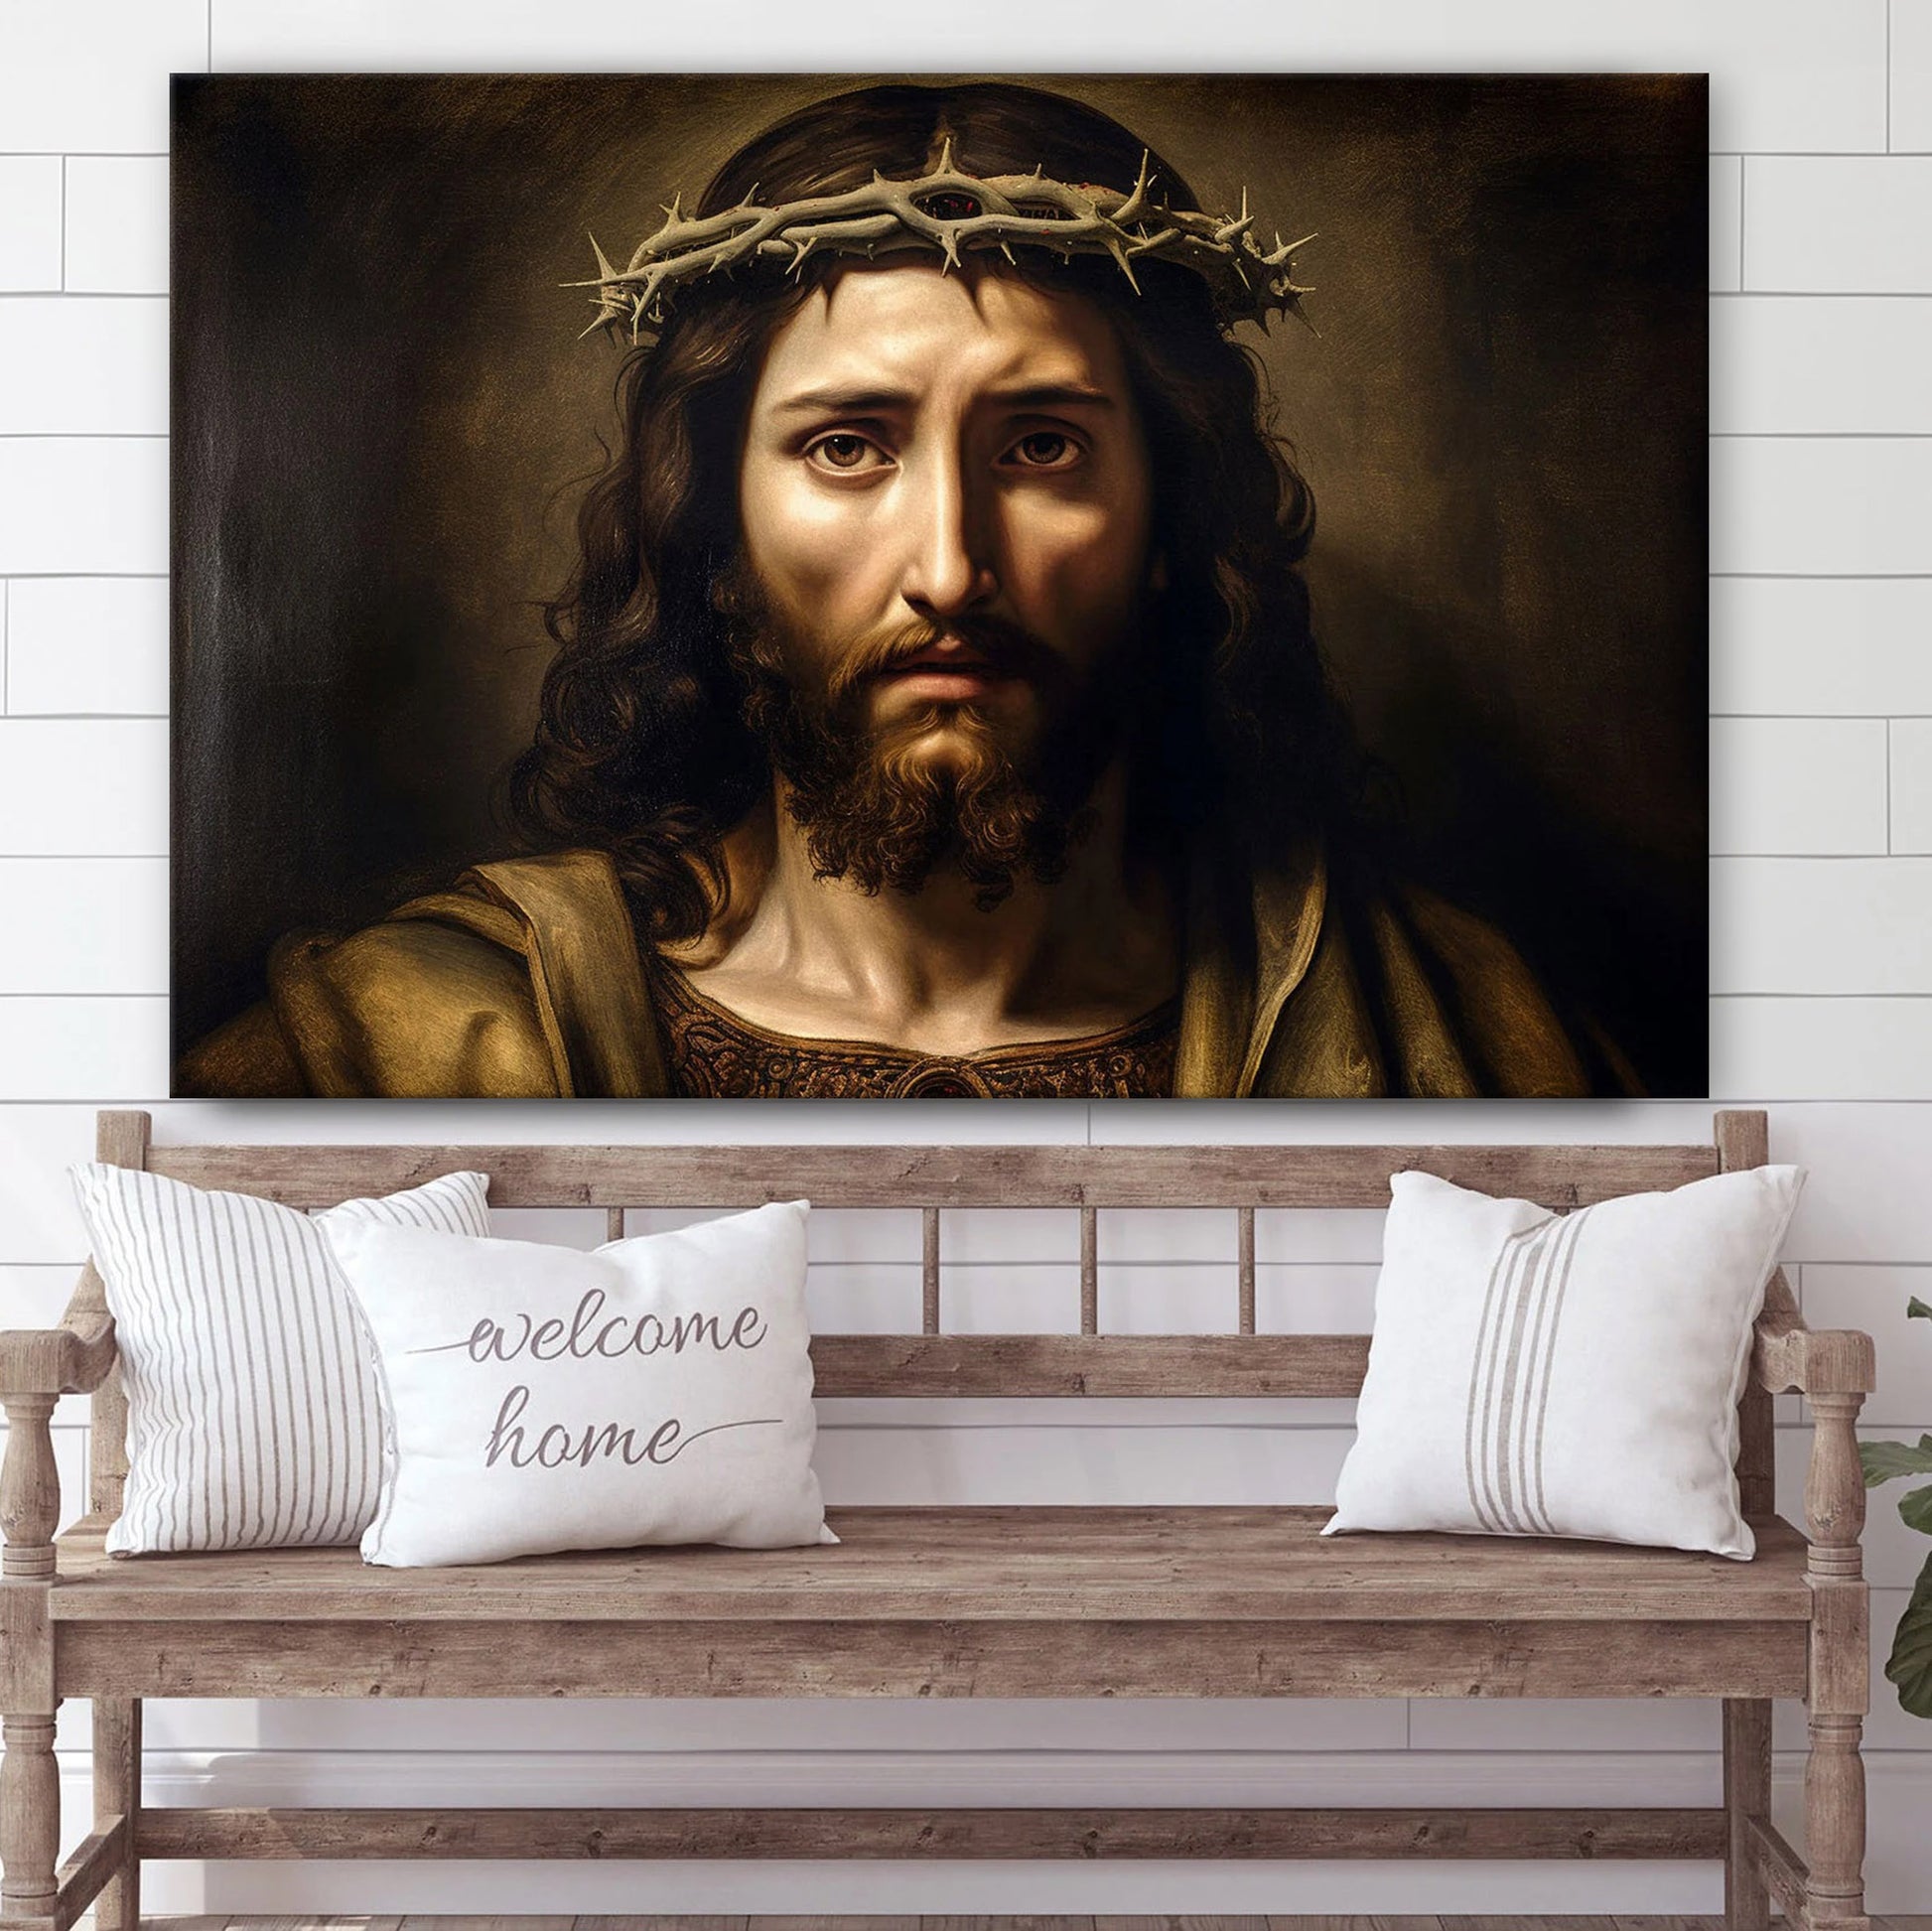 Portrait Of Jesus Christ Art Renaissance Style 1 - Canvas Pictures - Jesus Canvas Art - Christian Wall Art